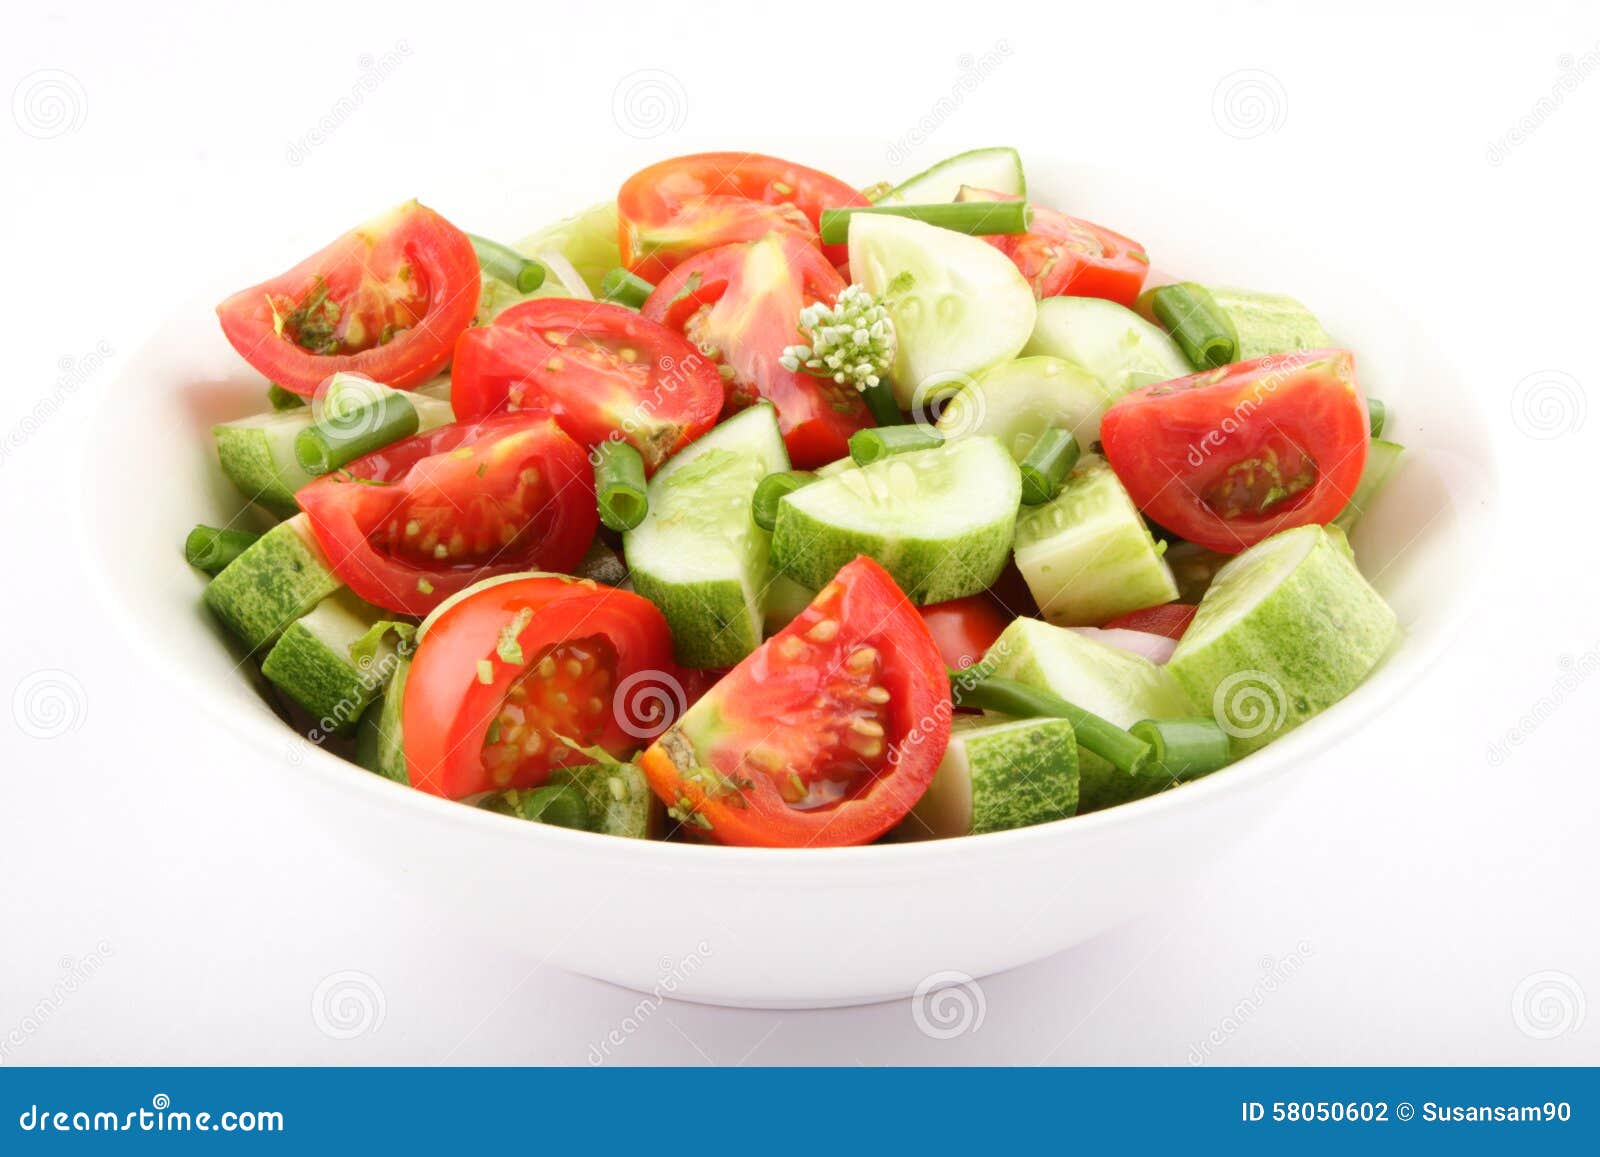 салат огурцы помидоры раст масло калорийность фото 119